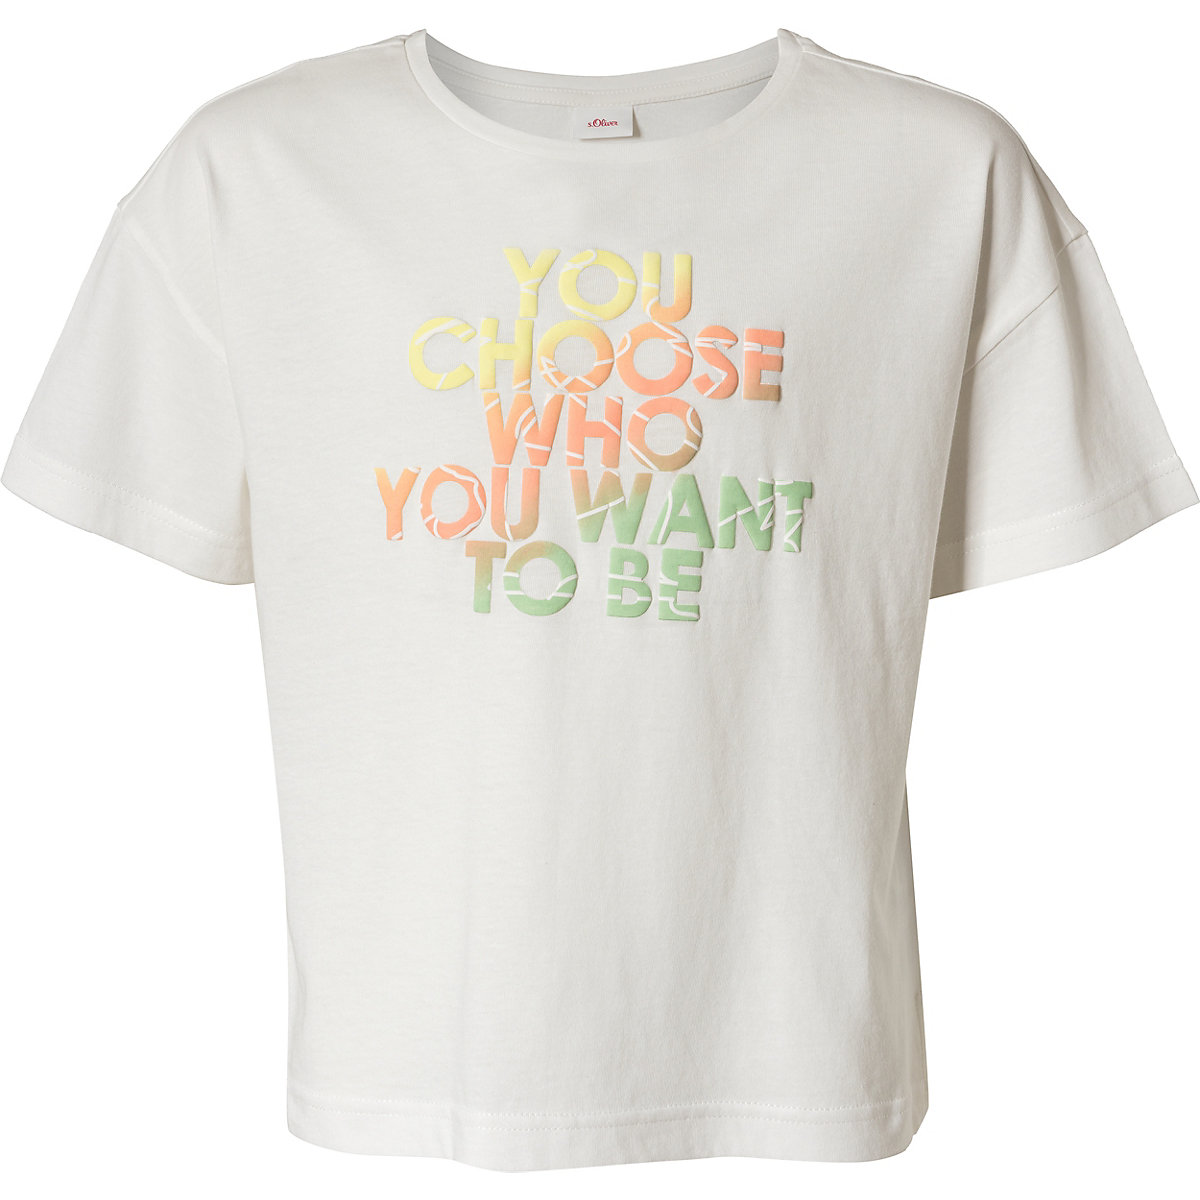 s.Oliver T-Shirt für Mädchen ecru